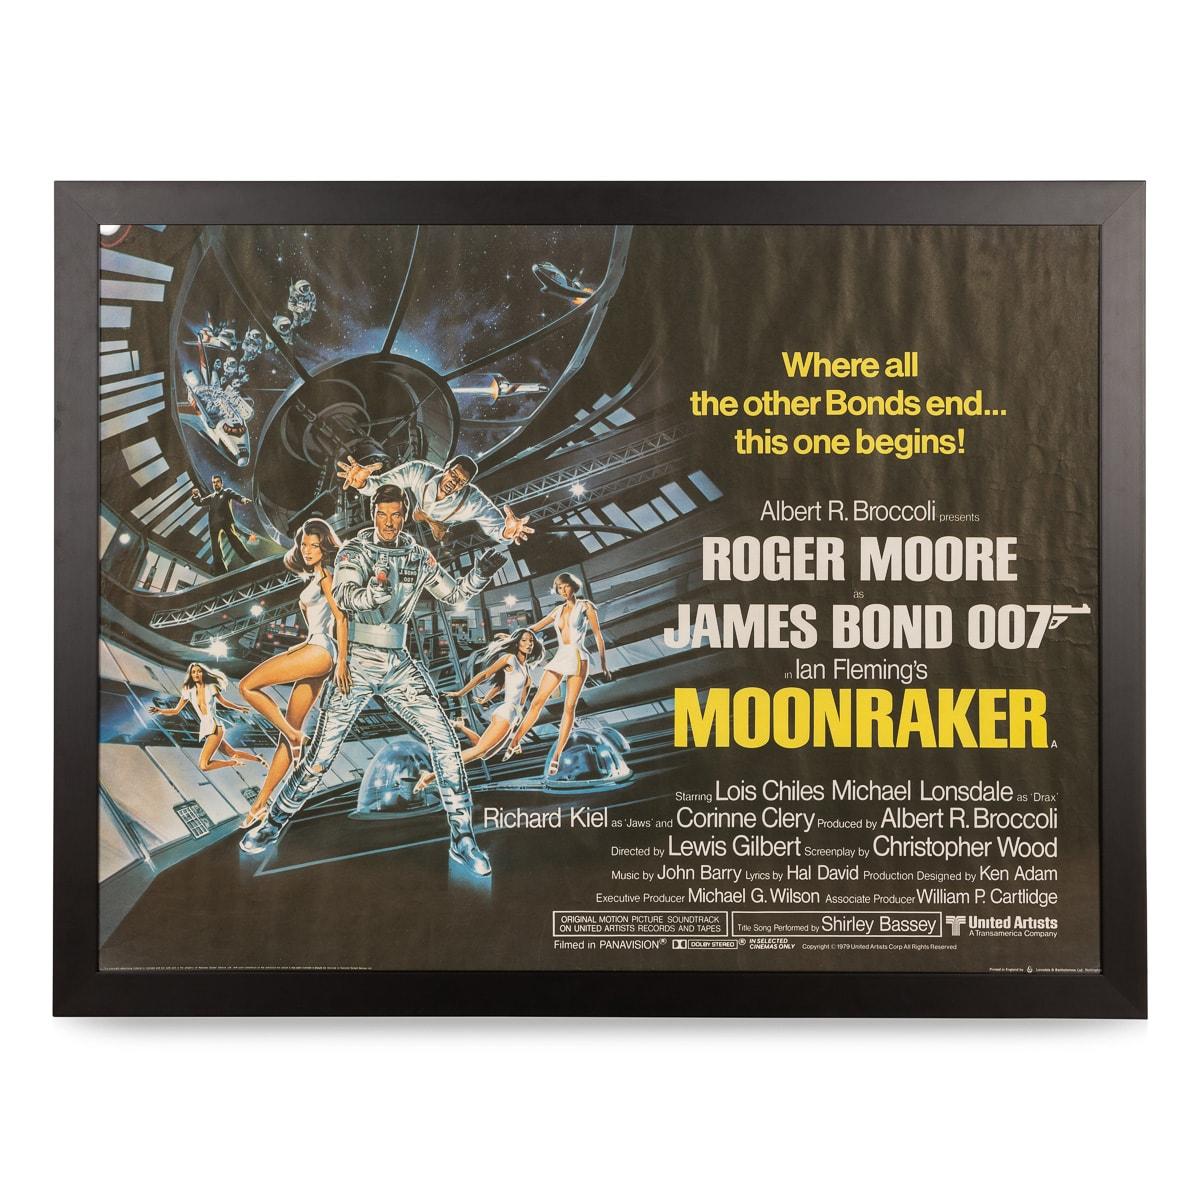 Très rare et originale affiche quadruple du film Moonraker (1979), signée par Roger Moore. Ce film est le onzième de la série James Bond, produit par Eon Productions, et le quatrième à mettre en scène Roger Moore dans le rôle de James Bond. Le film